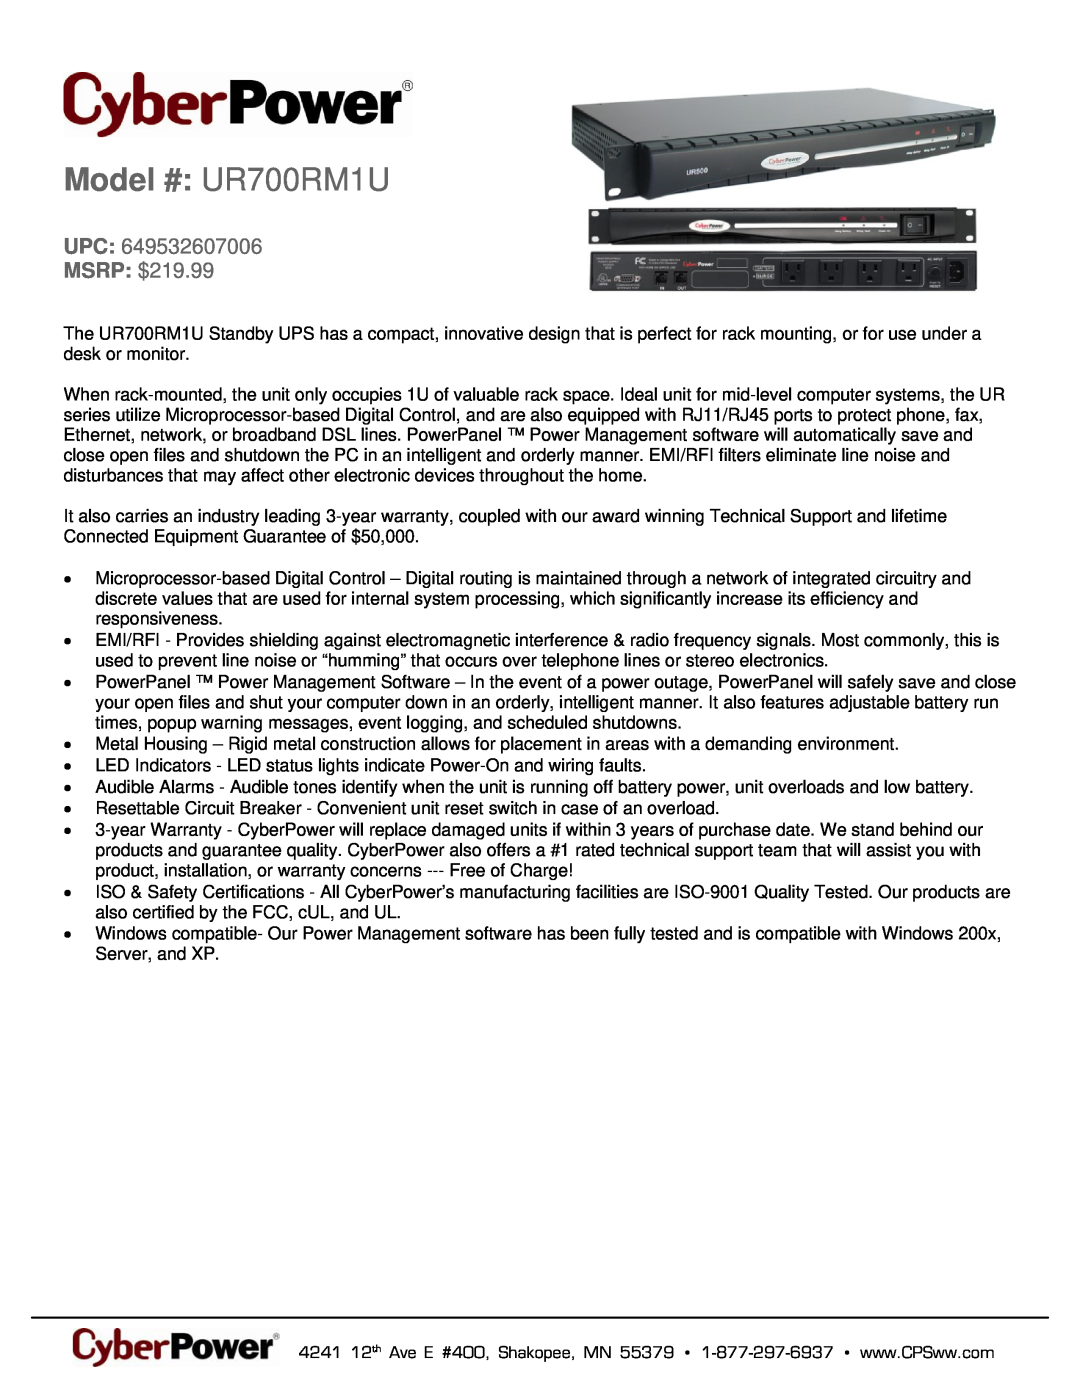 CyberPower Systems 649532607006 warranty Model # UR700RM1U, UPC MSRP $219.99 